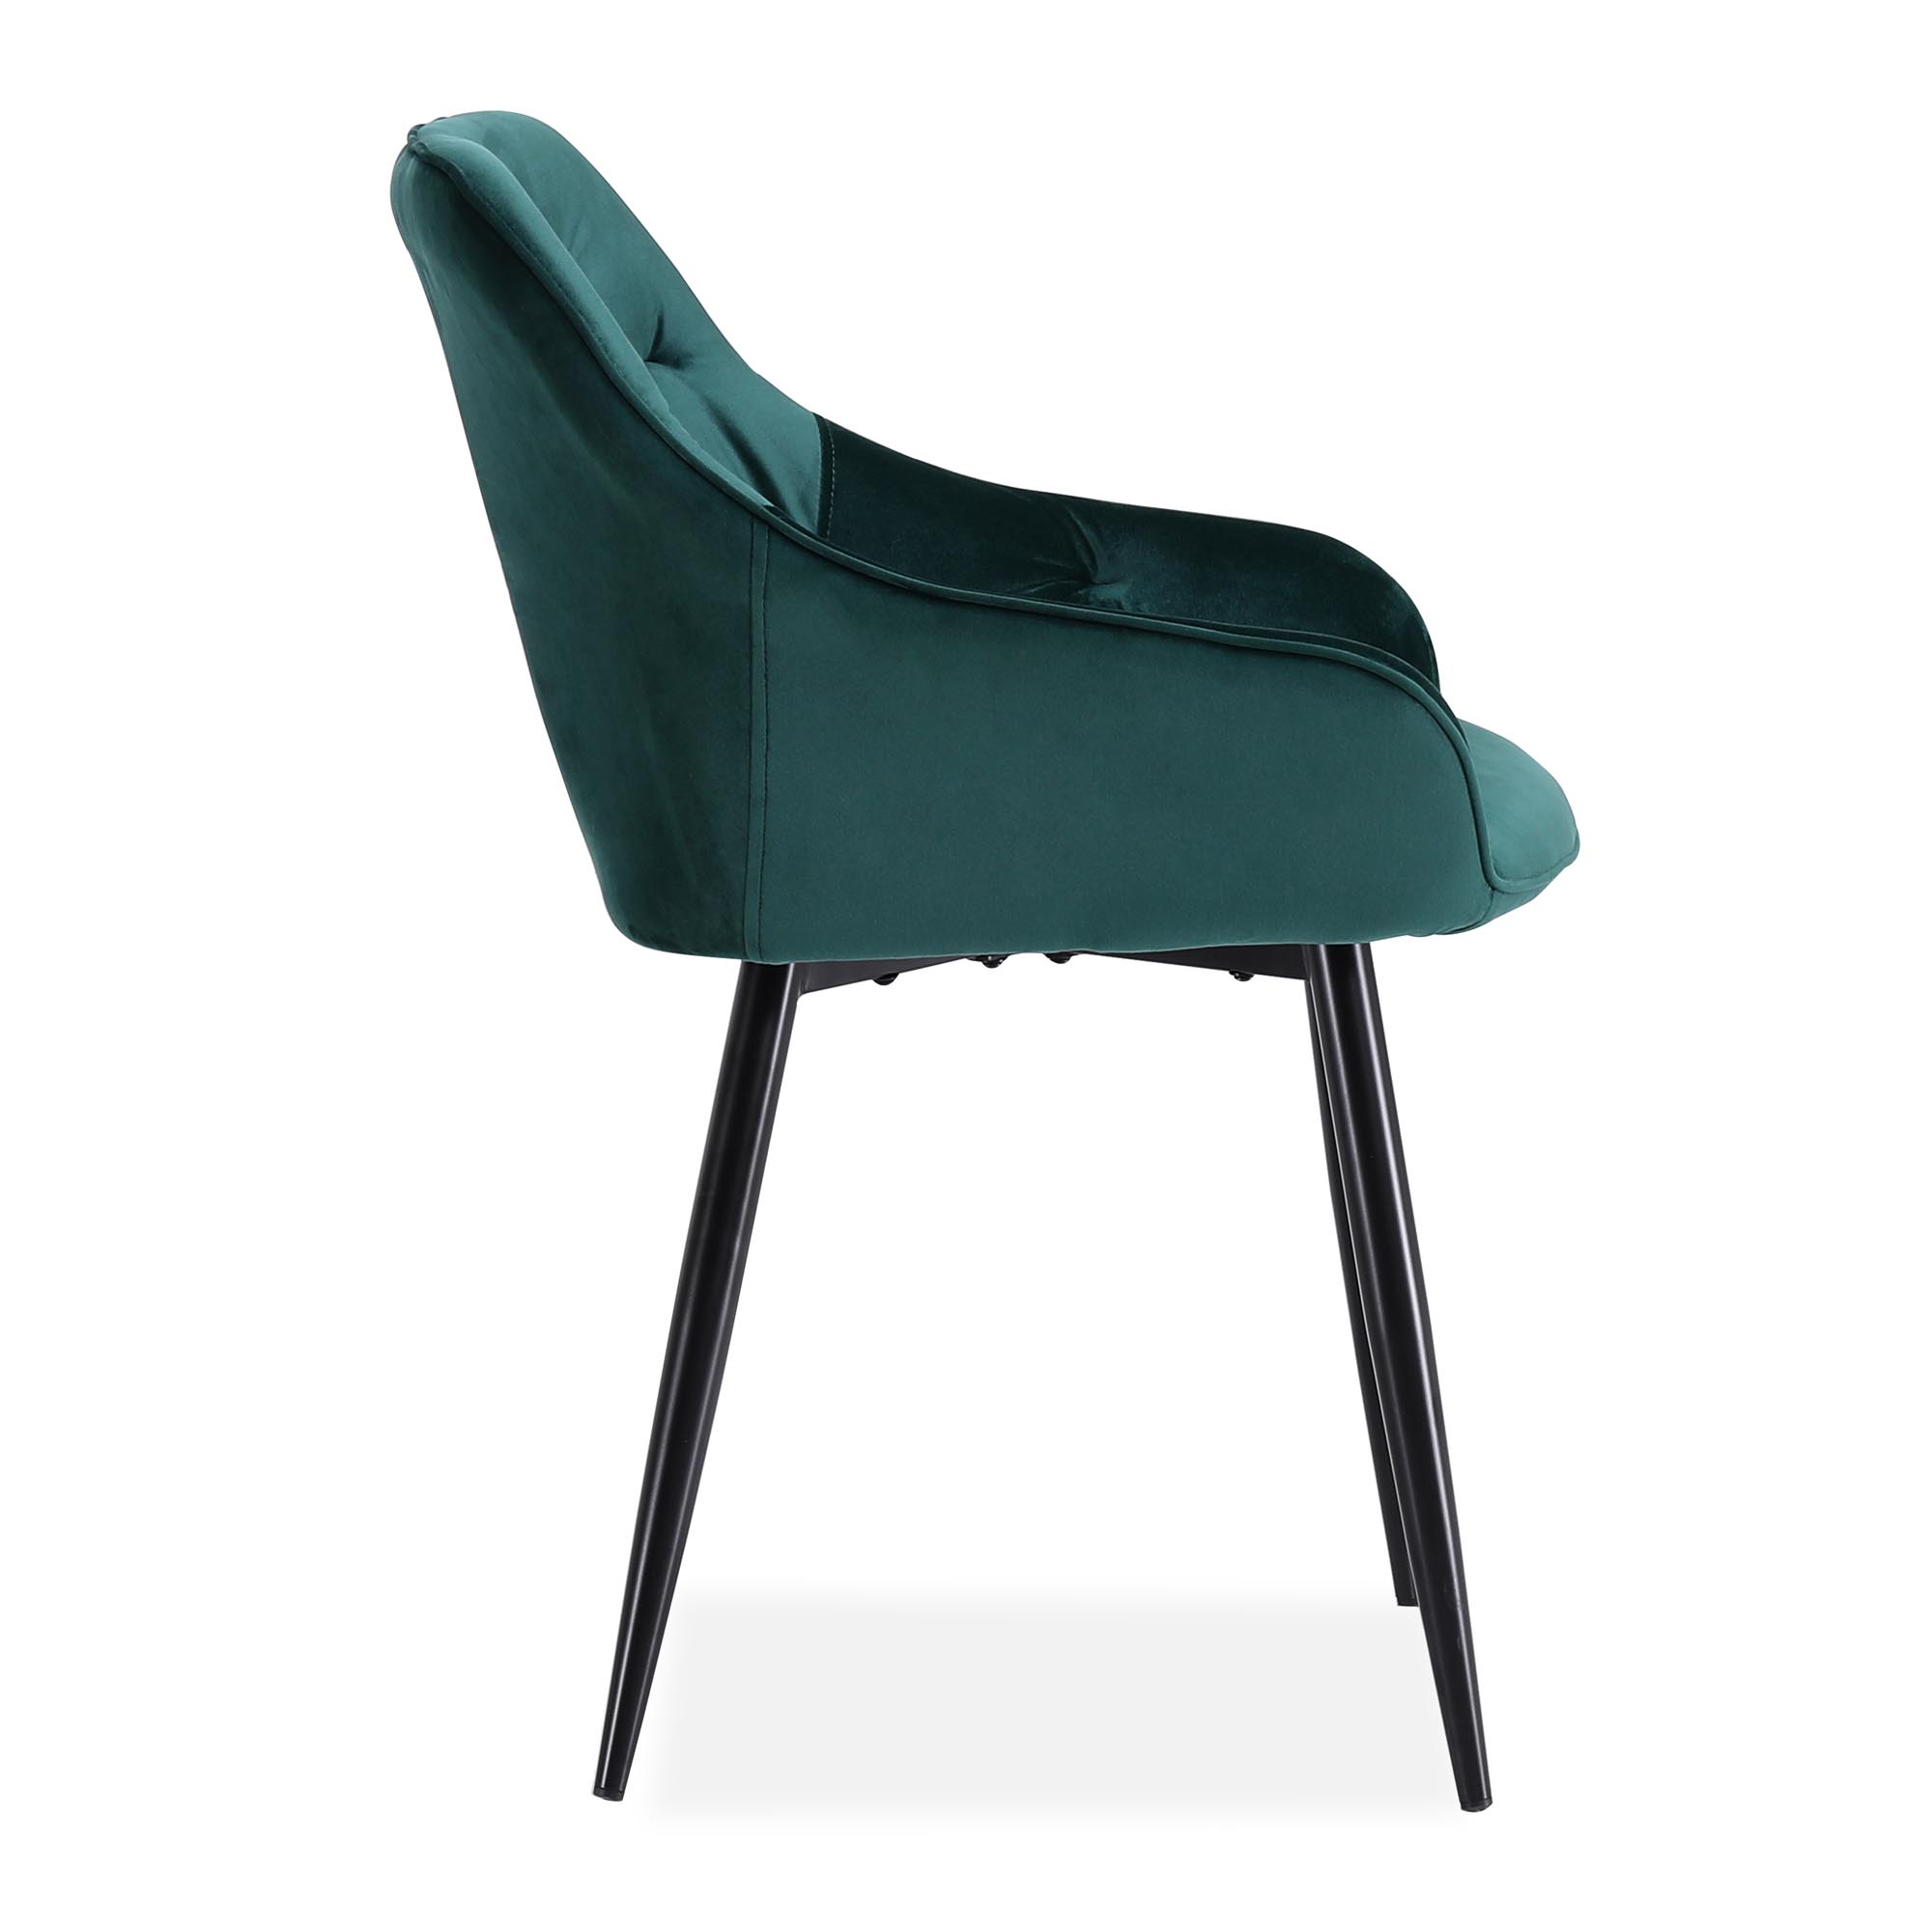 K487 krzesło ciemny zielony k487 krzesło ciemny zielony